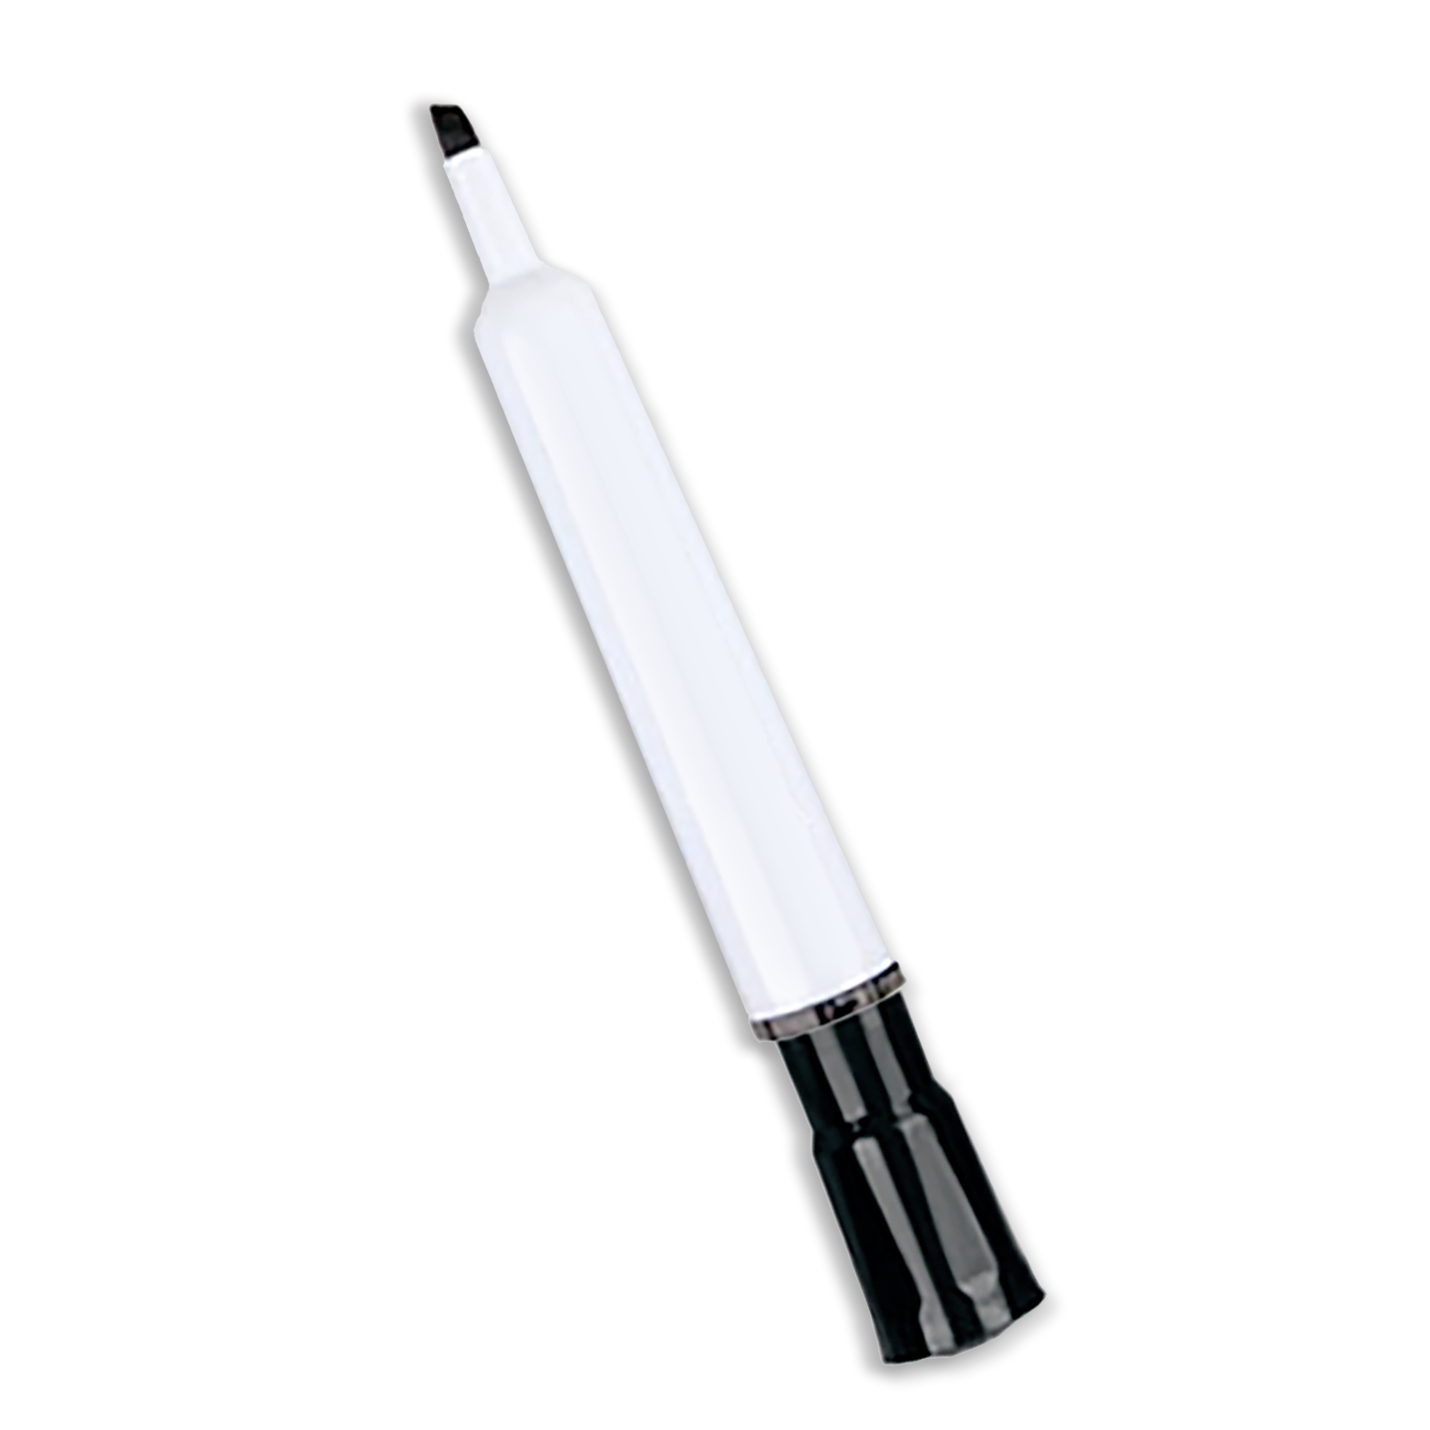 Dry Erase Marker – Broad Chisel Tip (Black)